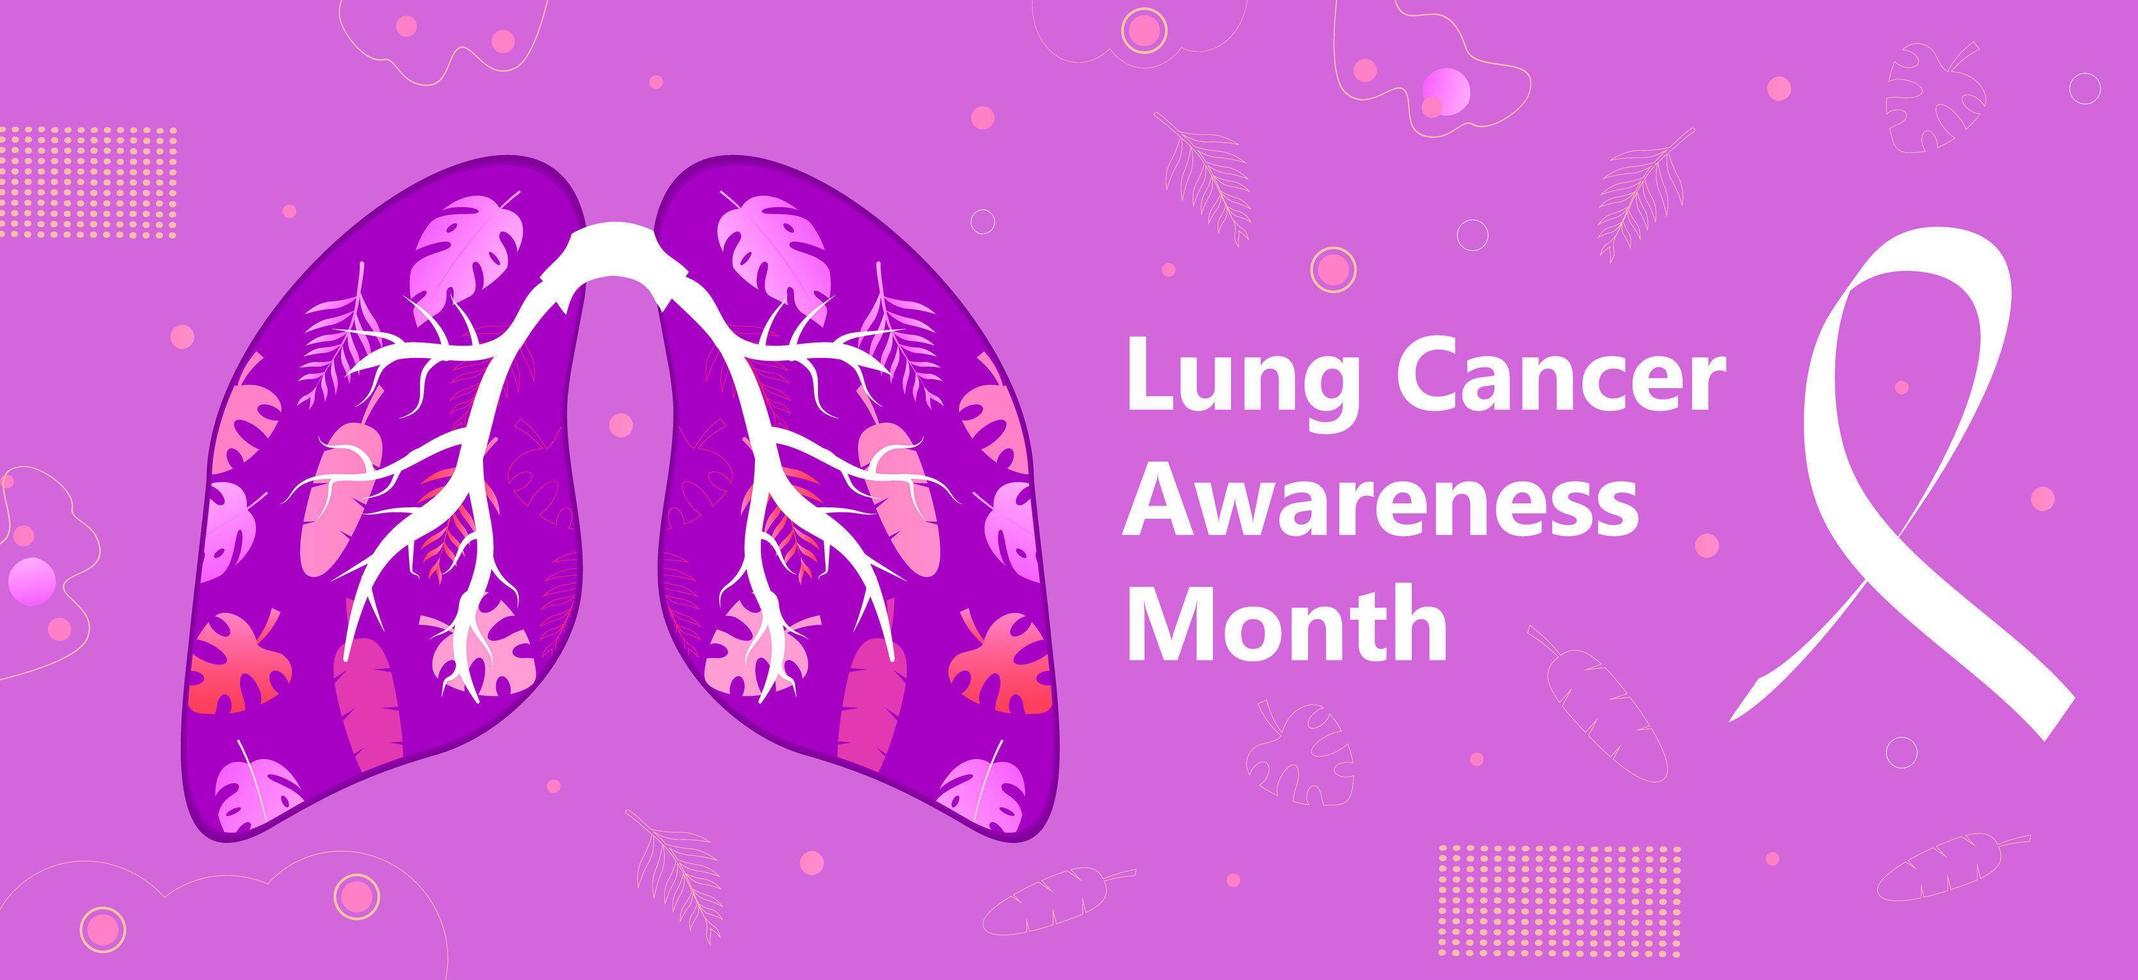 Il mese di sensibilizzazione sul cancro del polmone è organizzato a novembre negli Stati Uniti. vettore